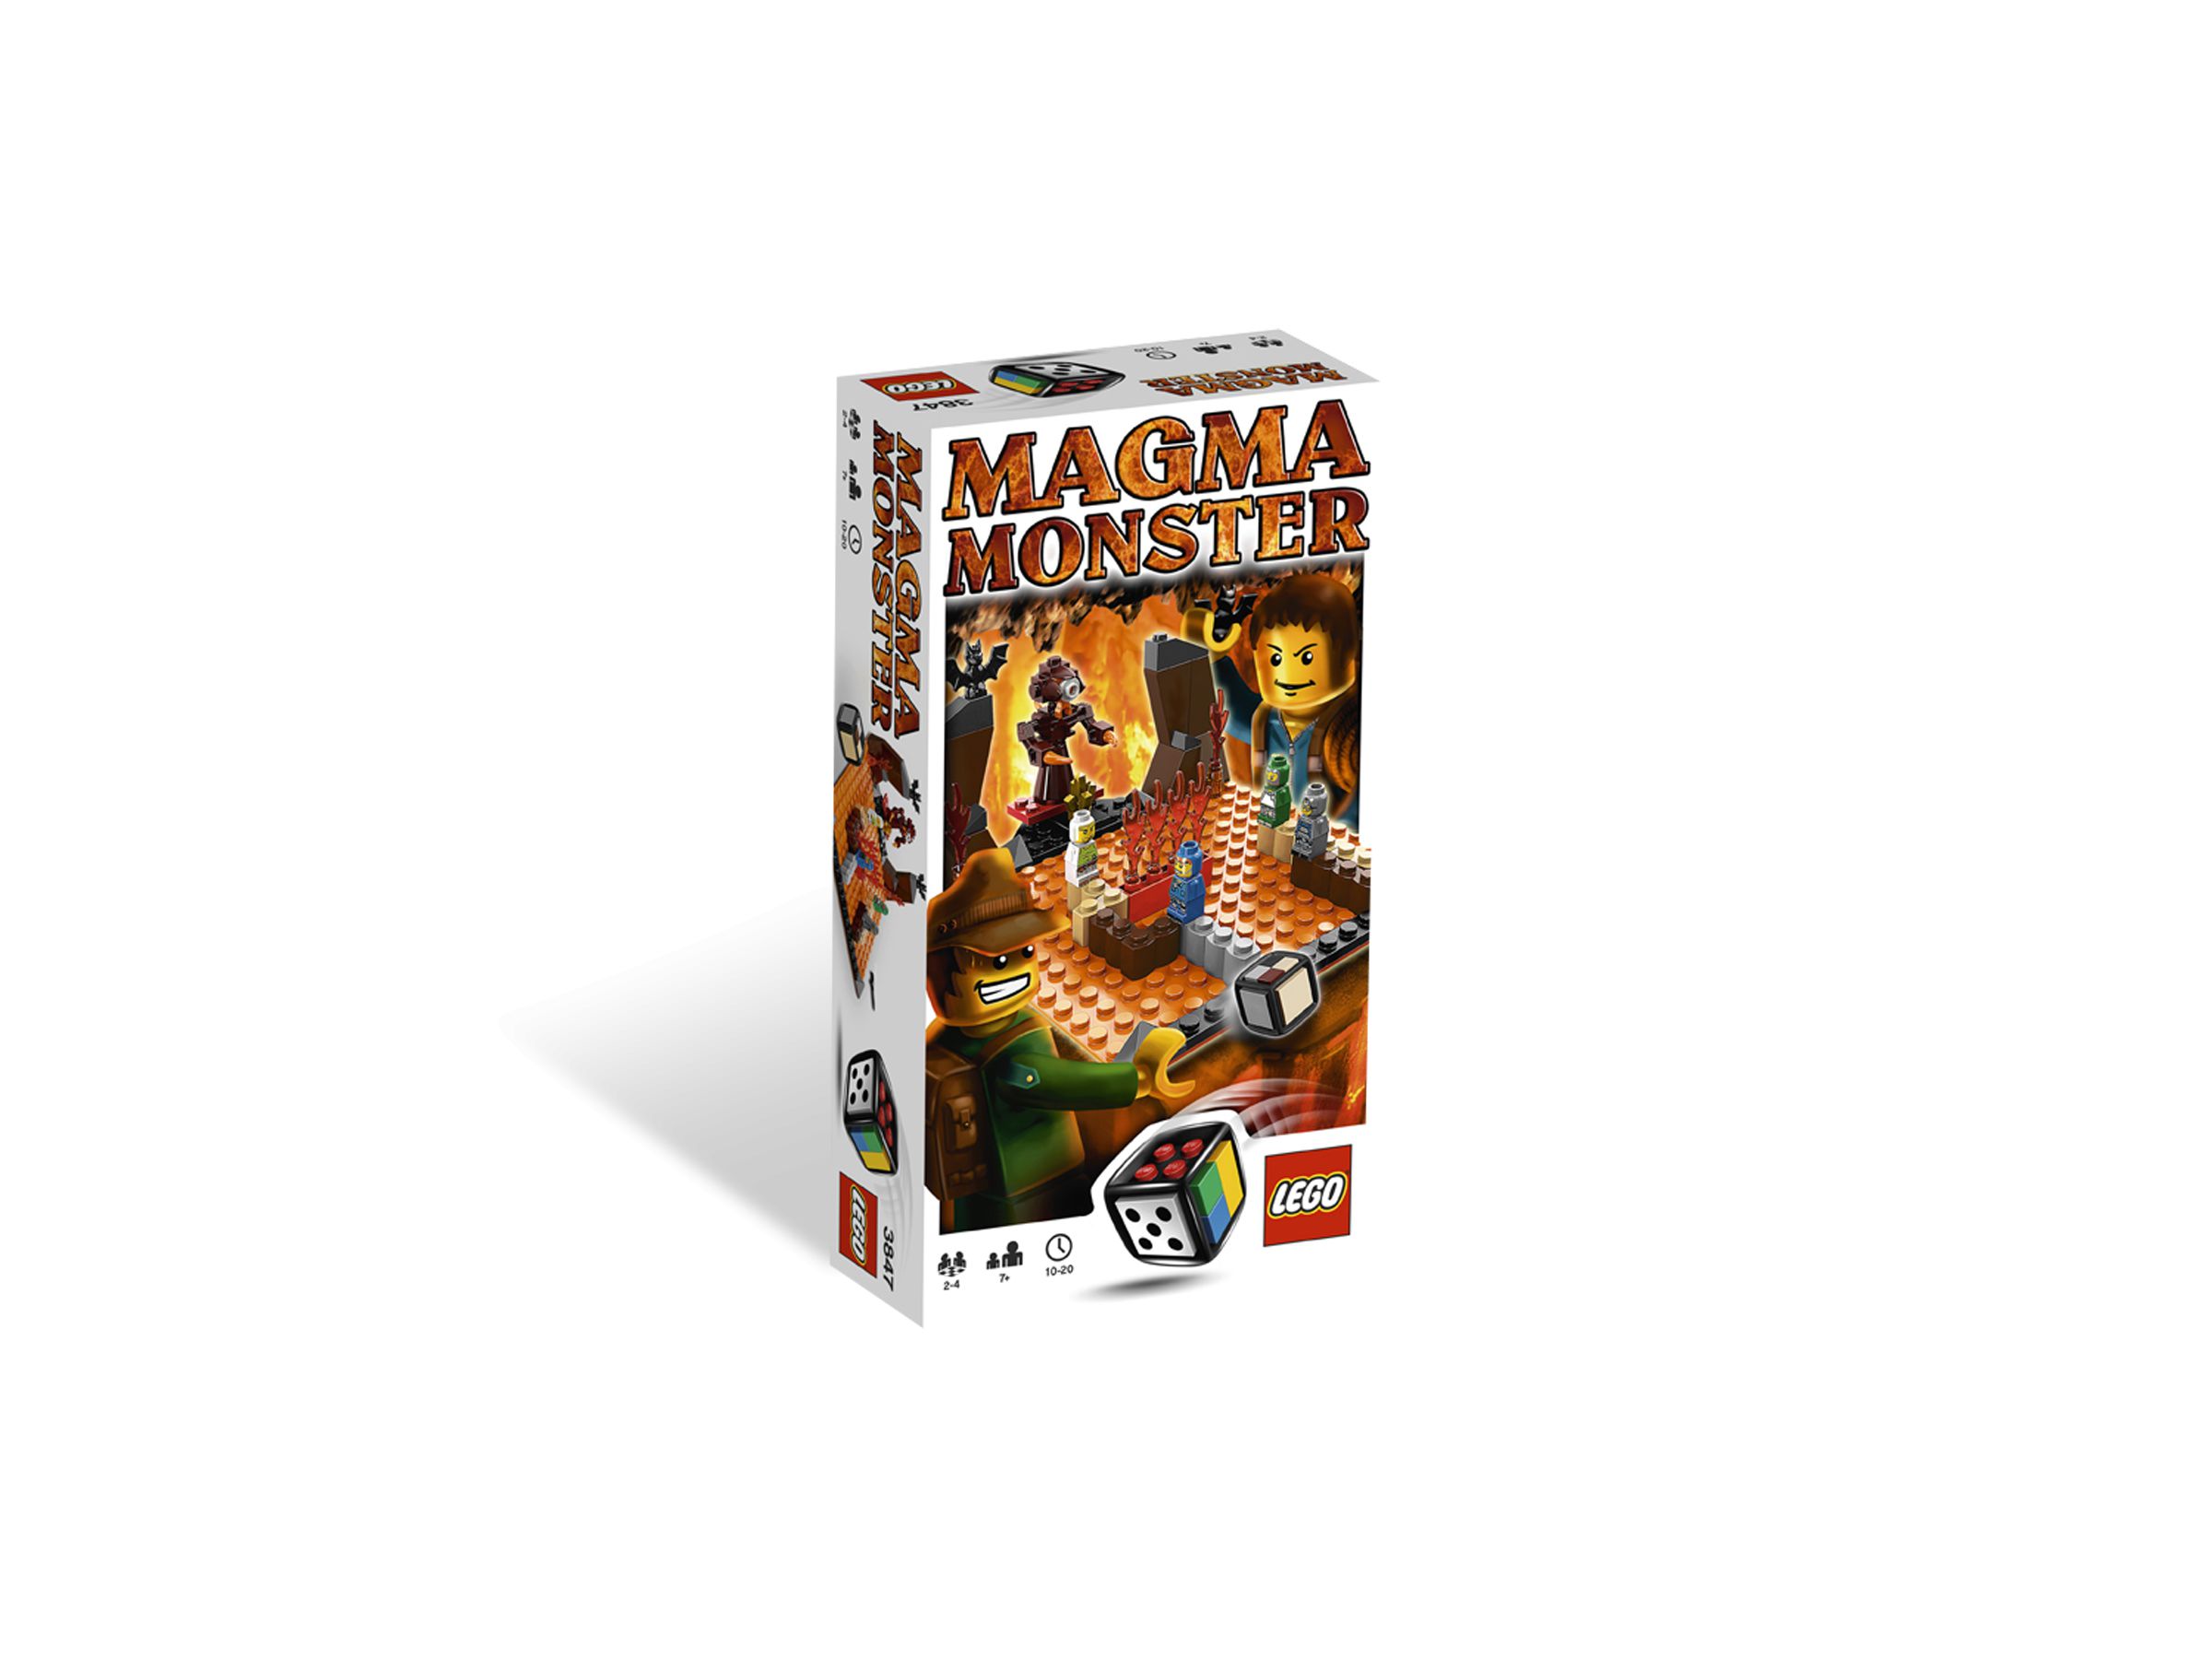 LEGO Games 3847 Magma Monster LEGO_3847.jpg